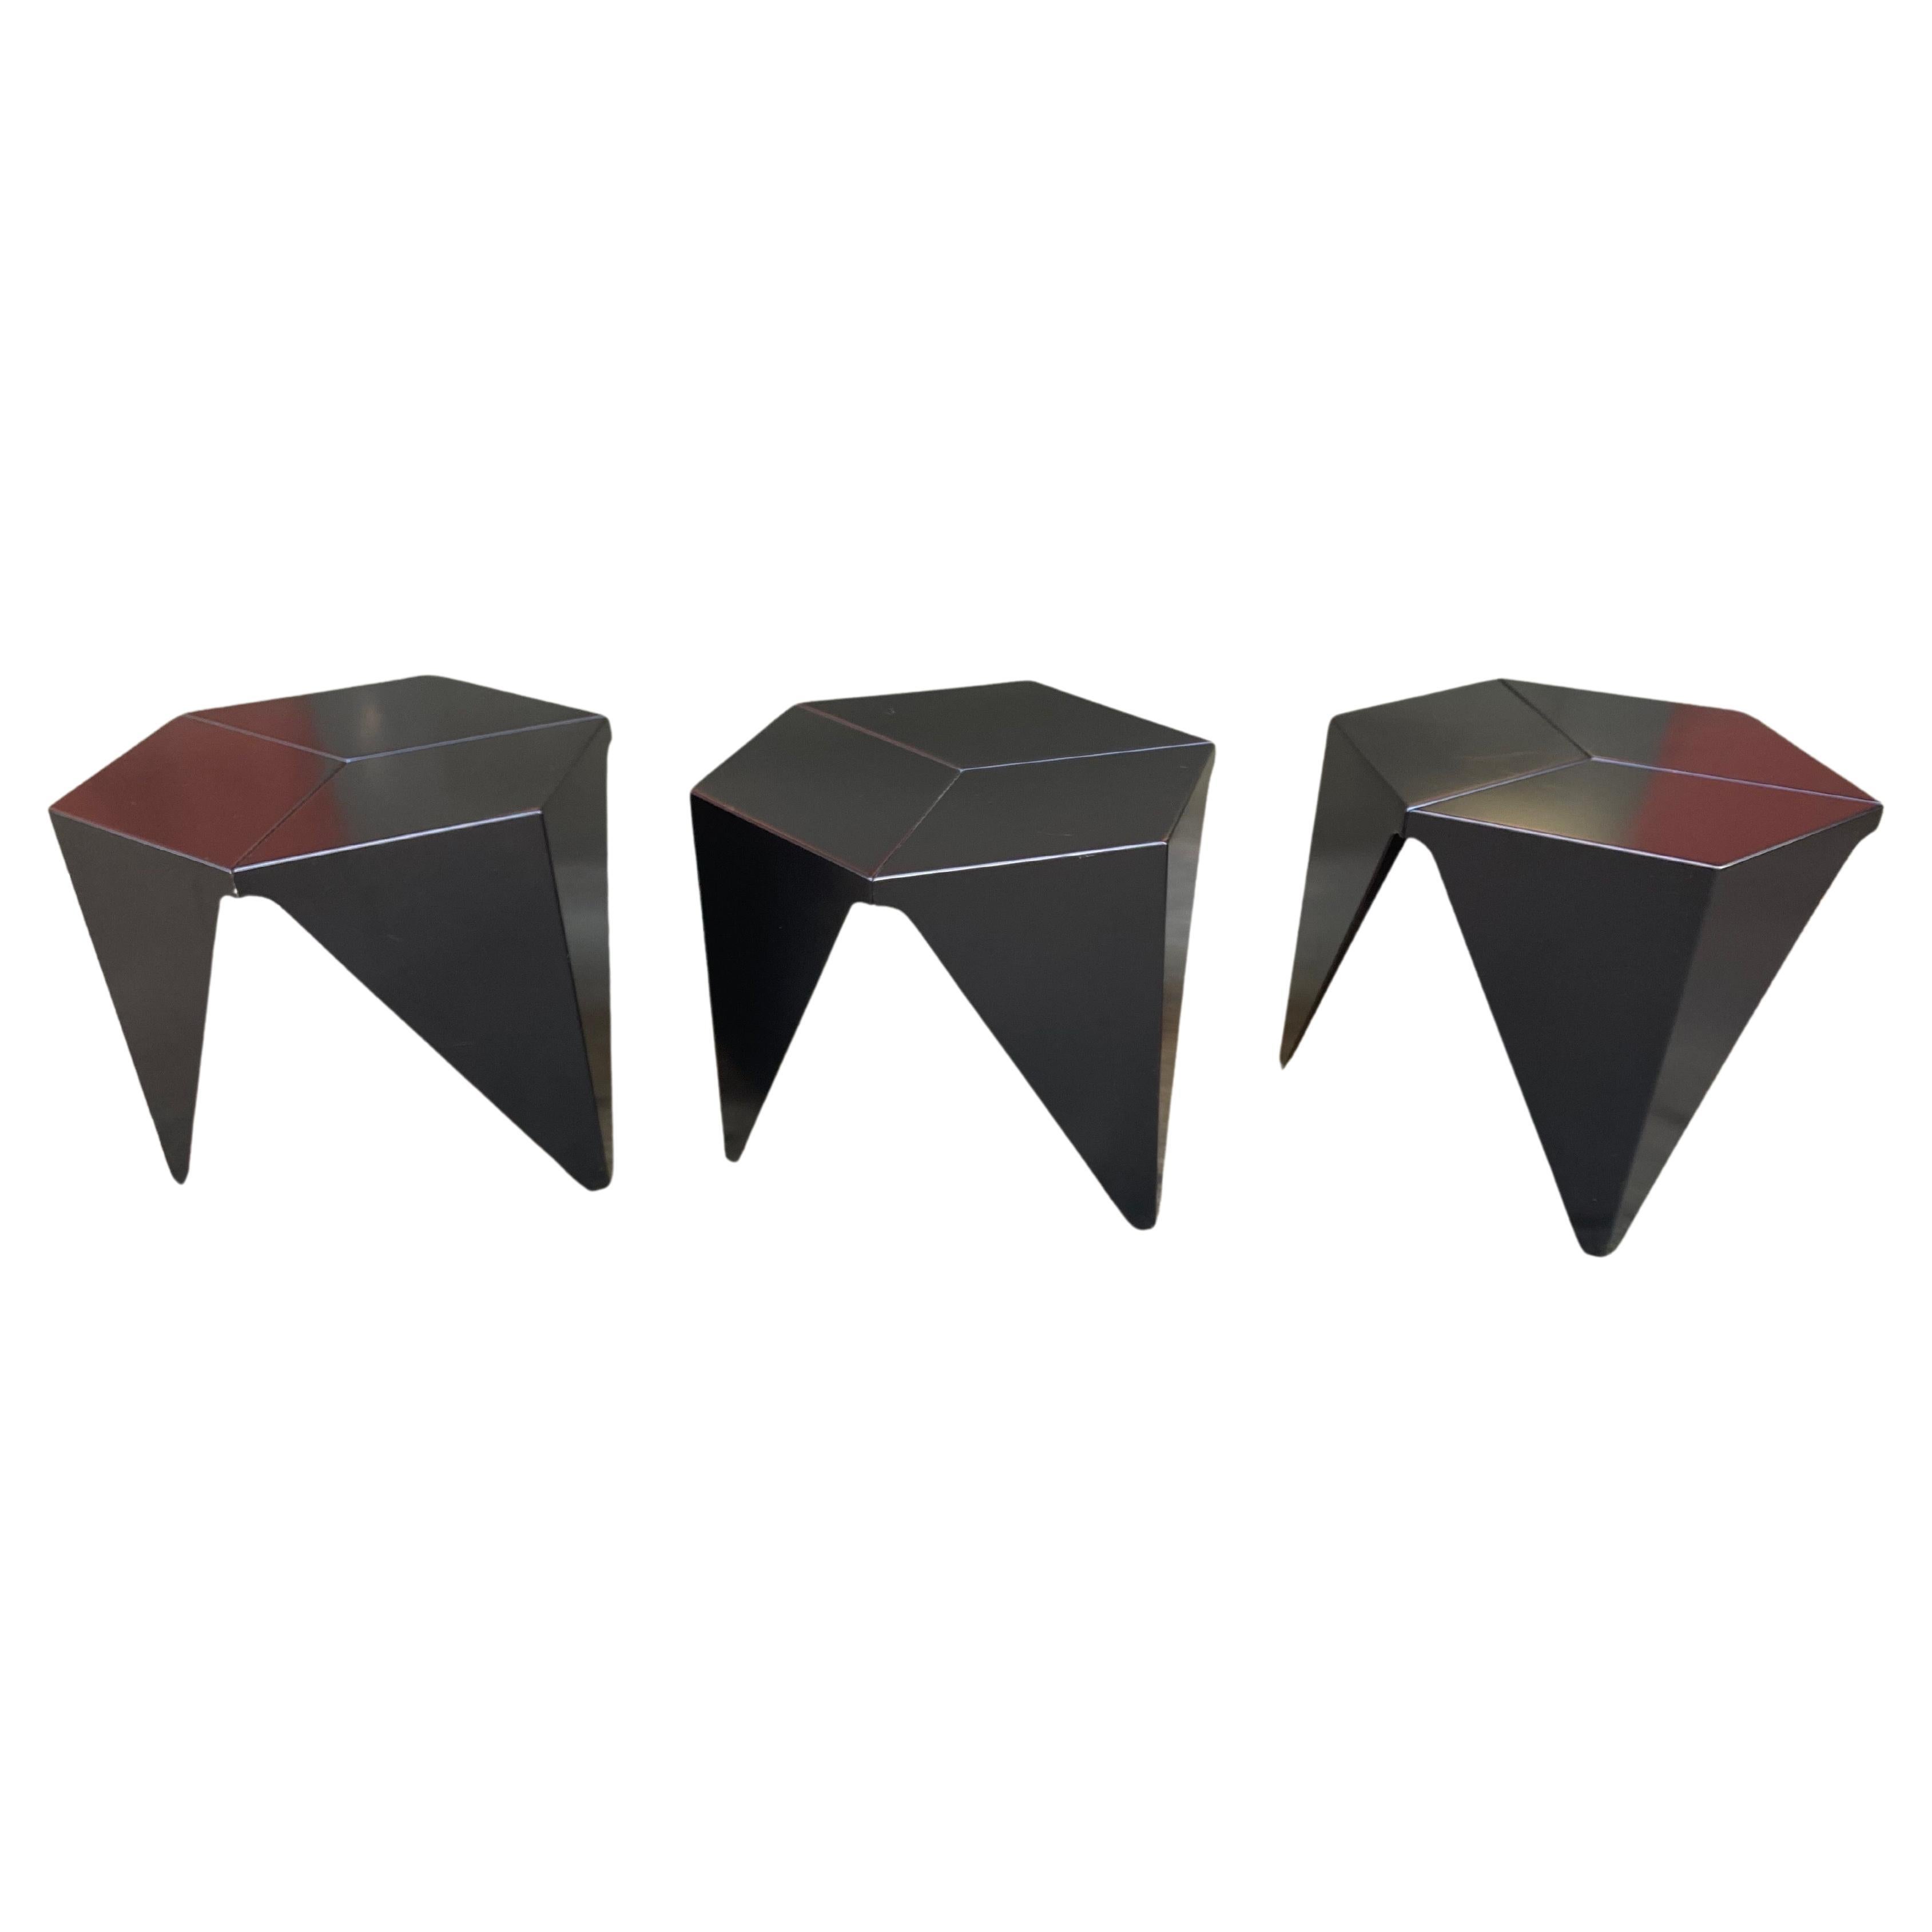 Tables prismatiques Noguchi pour Vitra, 2 disponibles, prix séparément